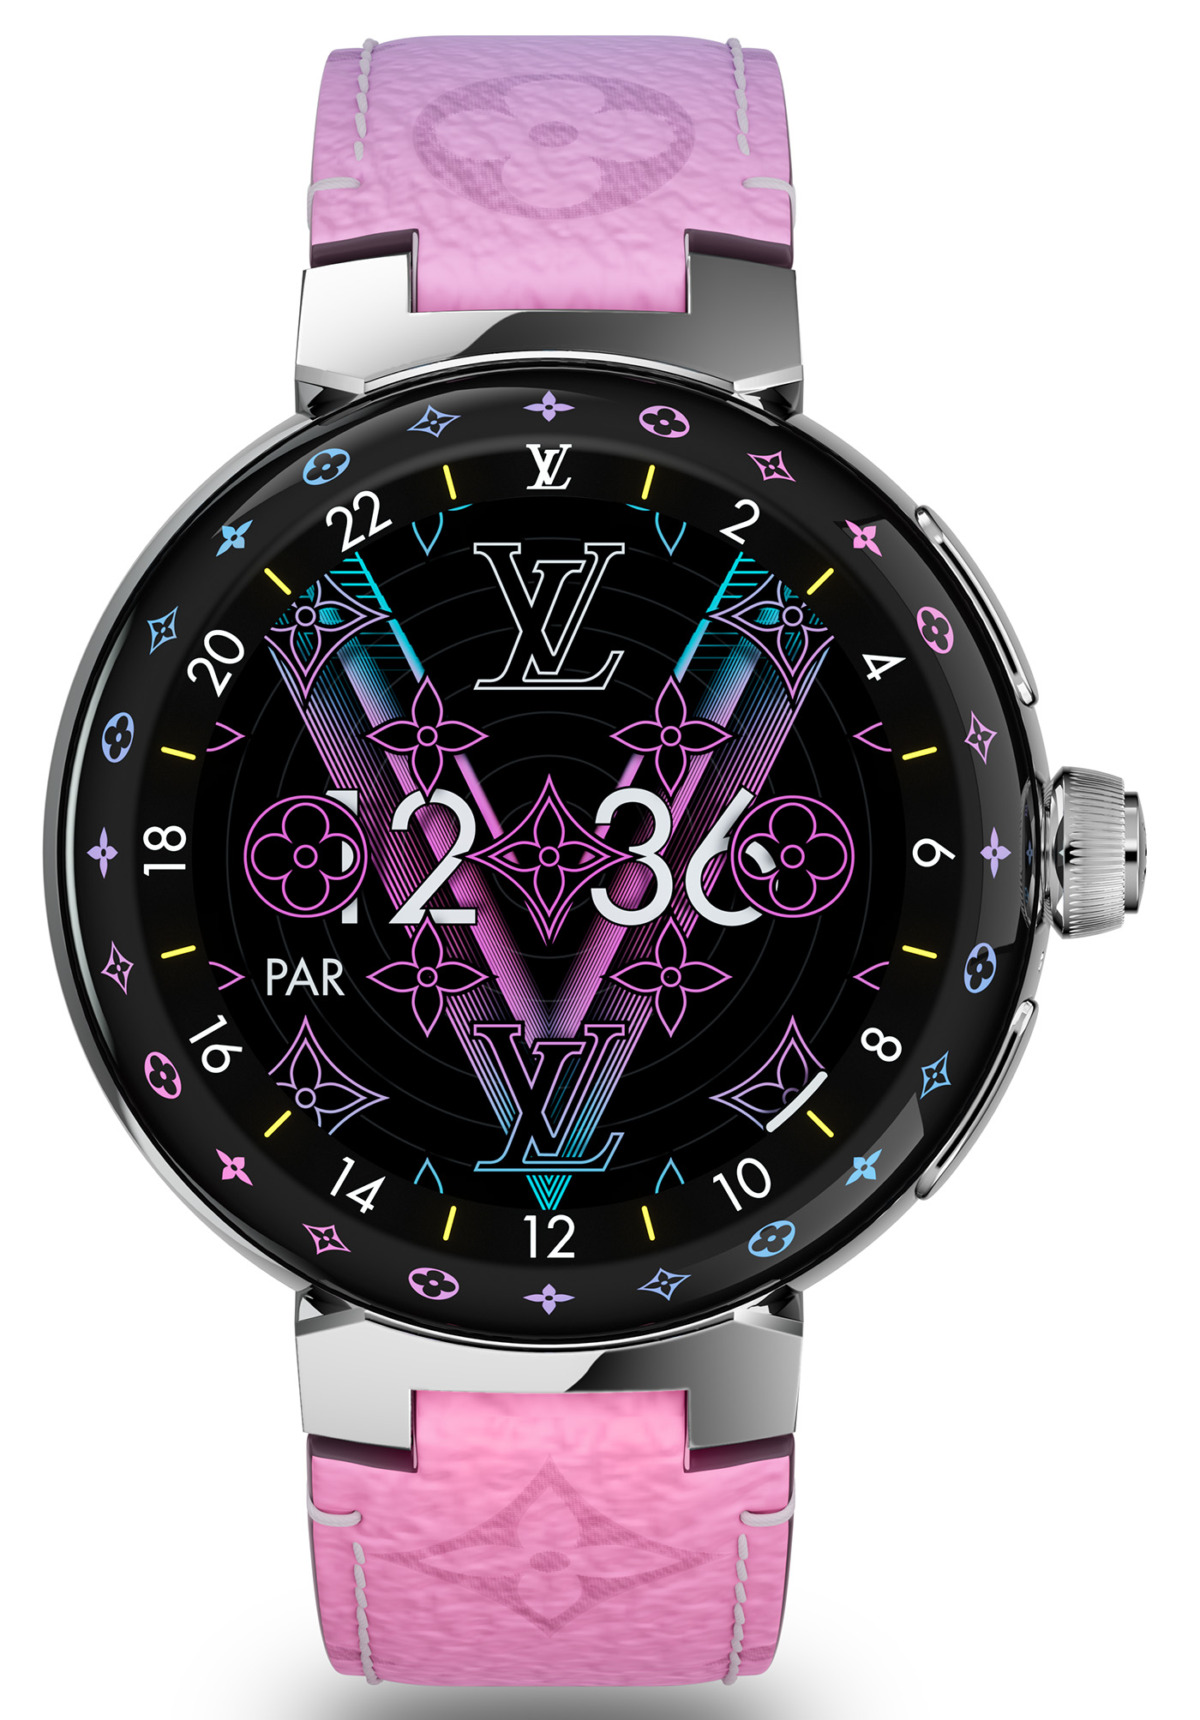 Louis Vuitton revisite sa montre connectée Tambour Horizon